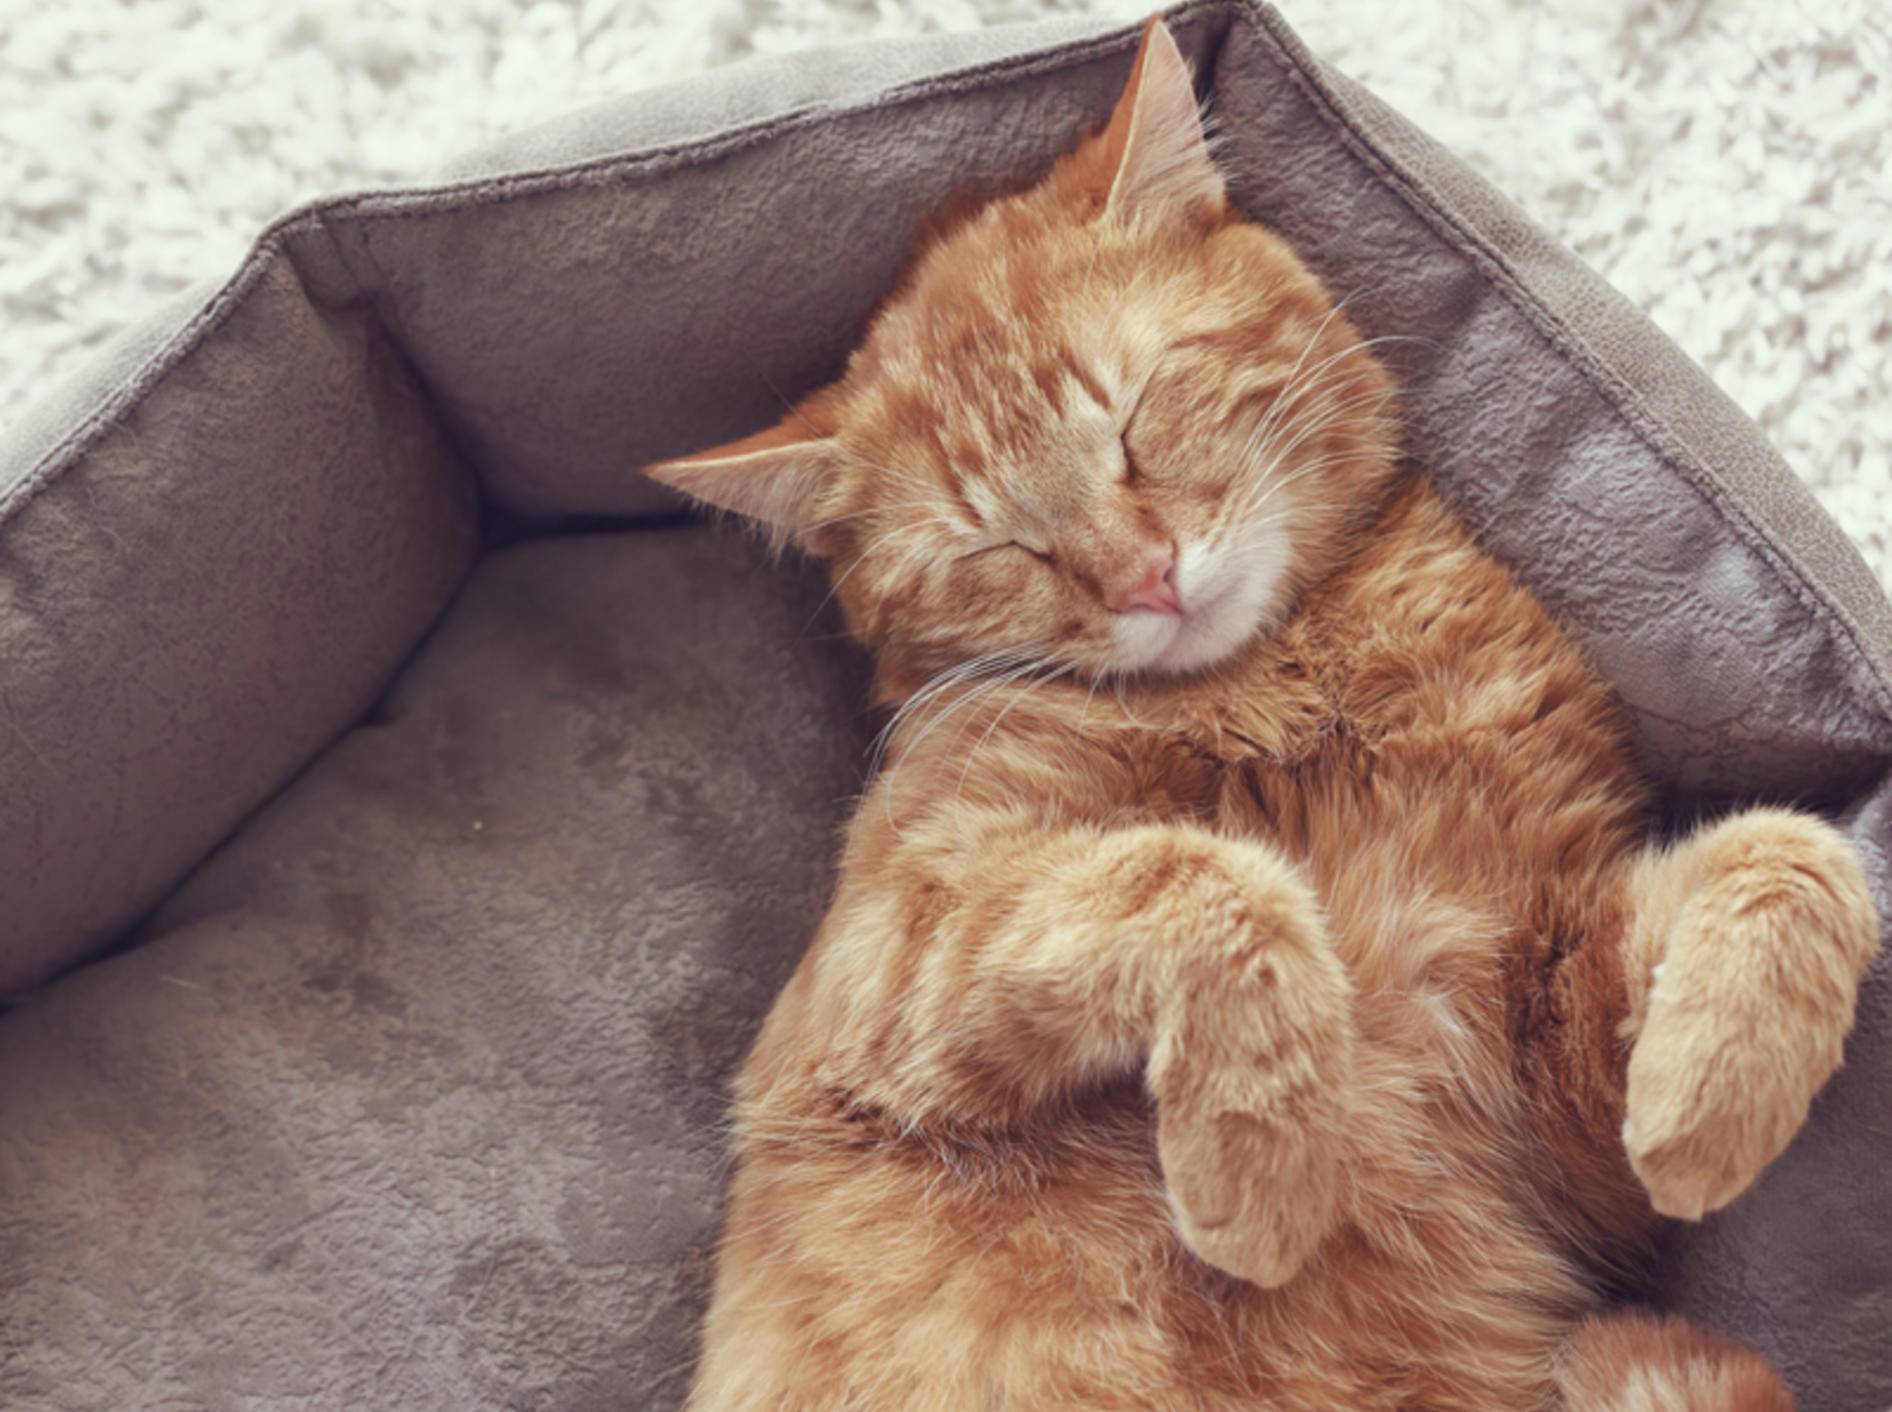 Katzen mit Ataxie können mit etwas Hilfe im Alltag ein schönes Leben führen – Shutterstock / Alena Ozerova